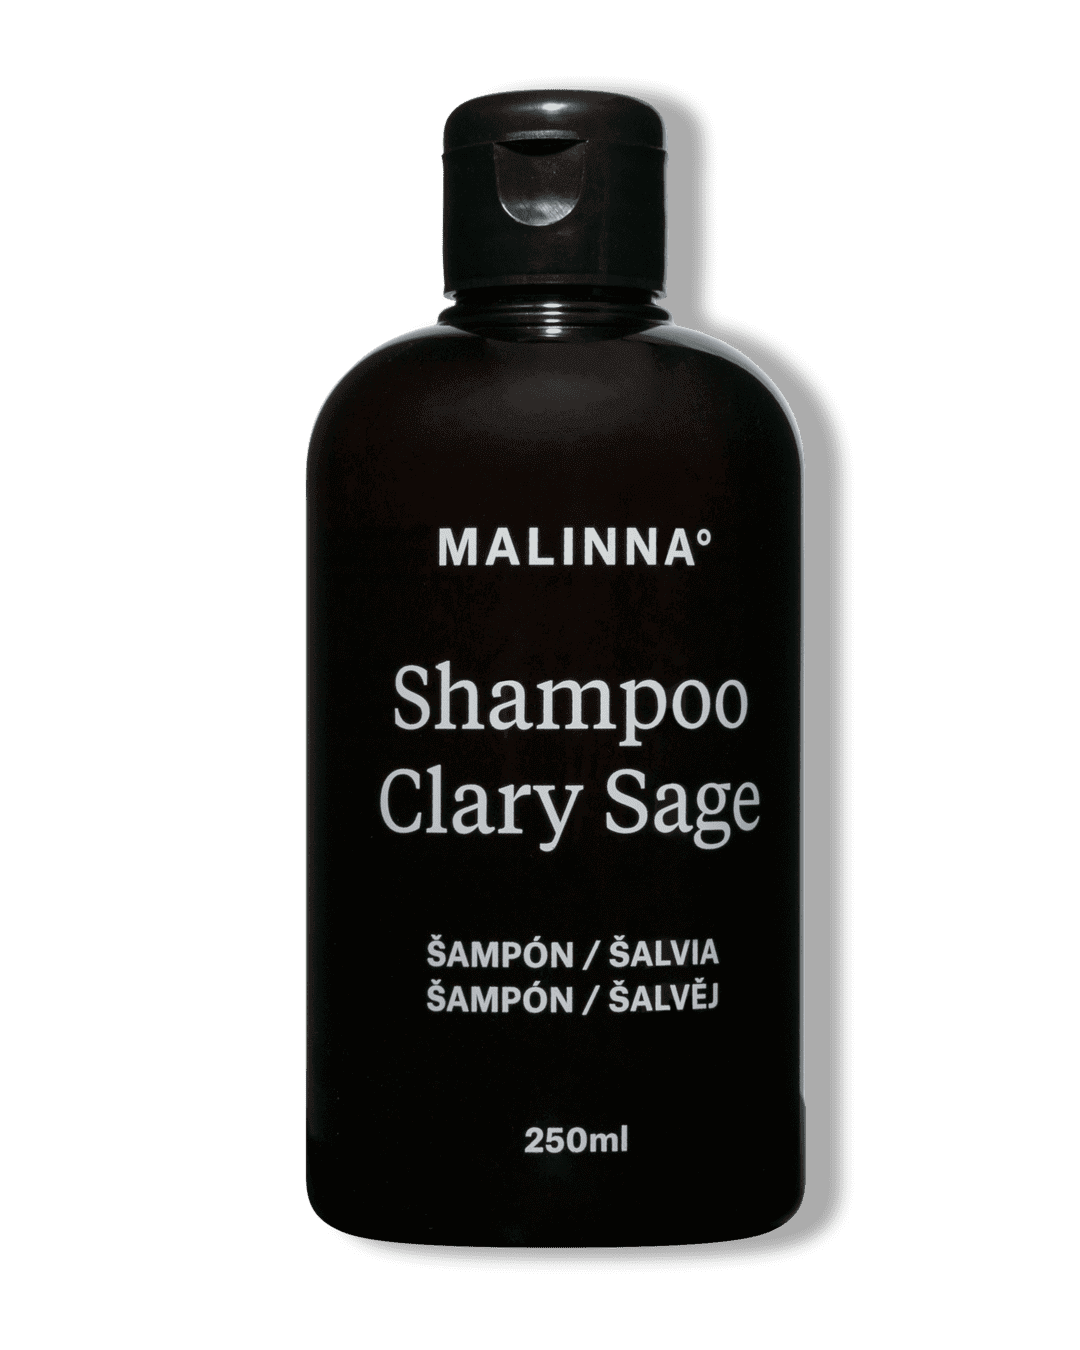 Shampoo Clary Sage